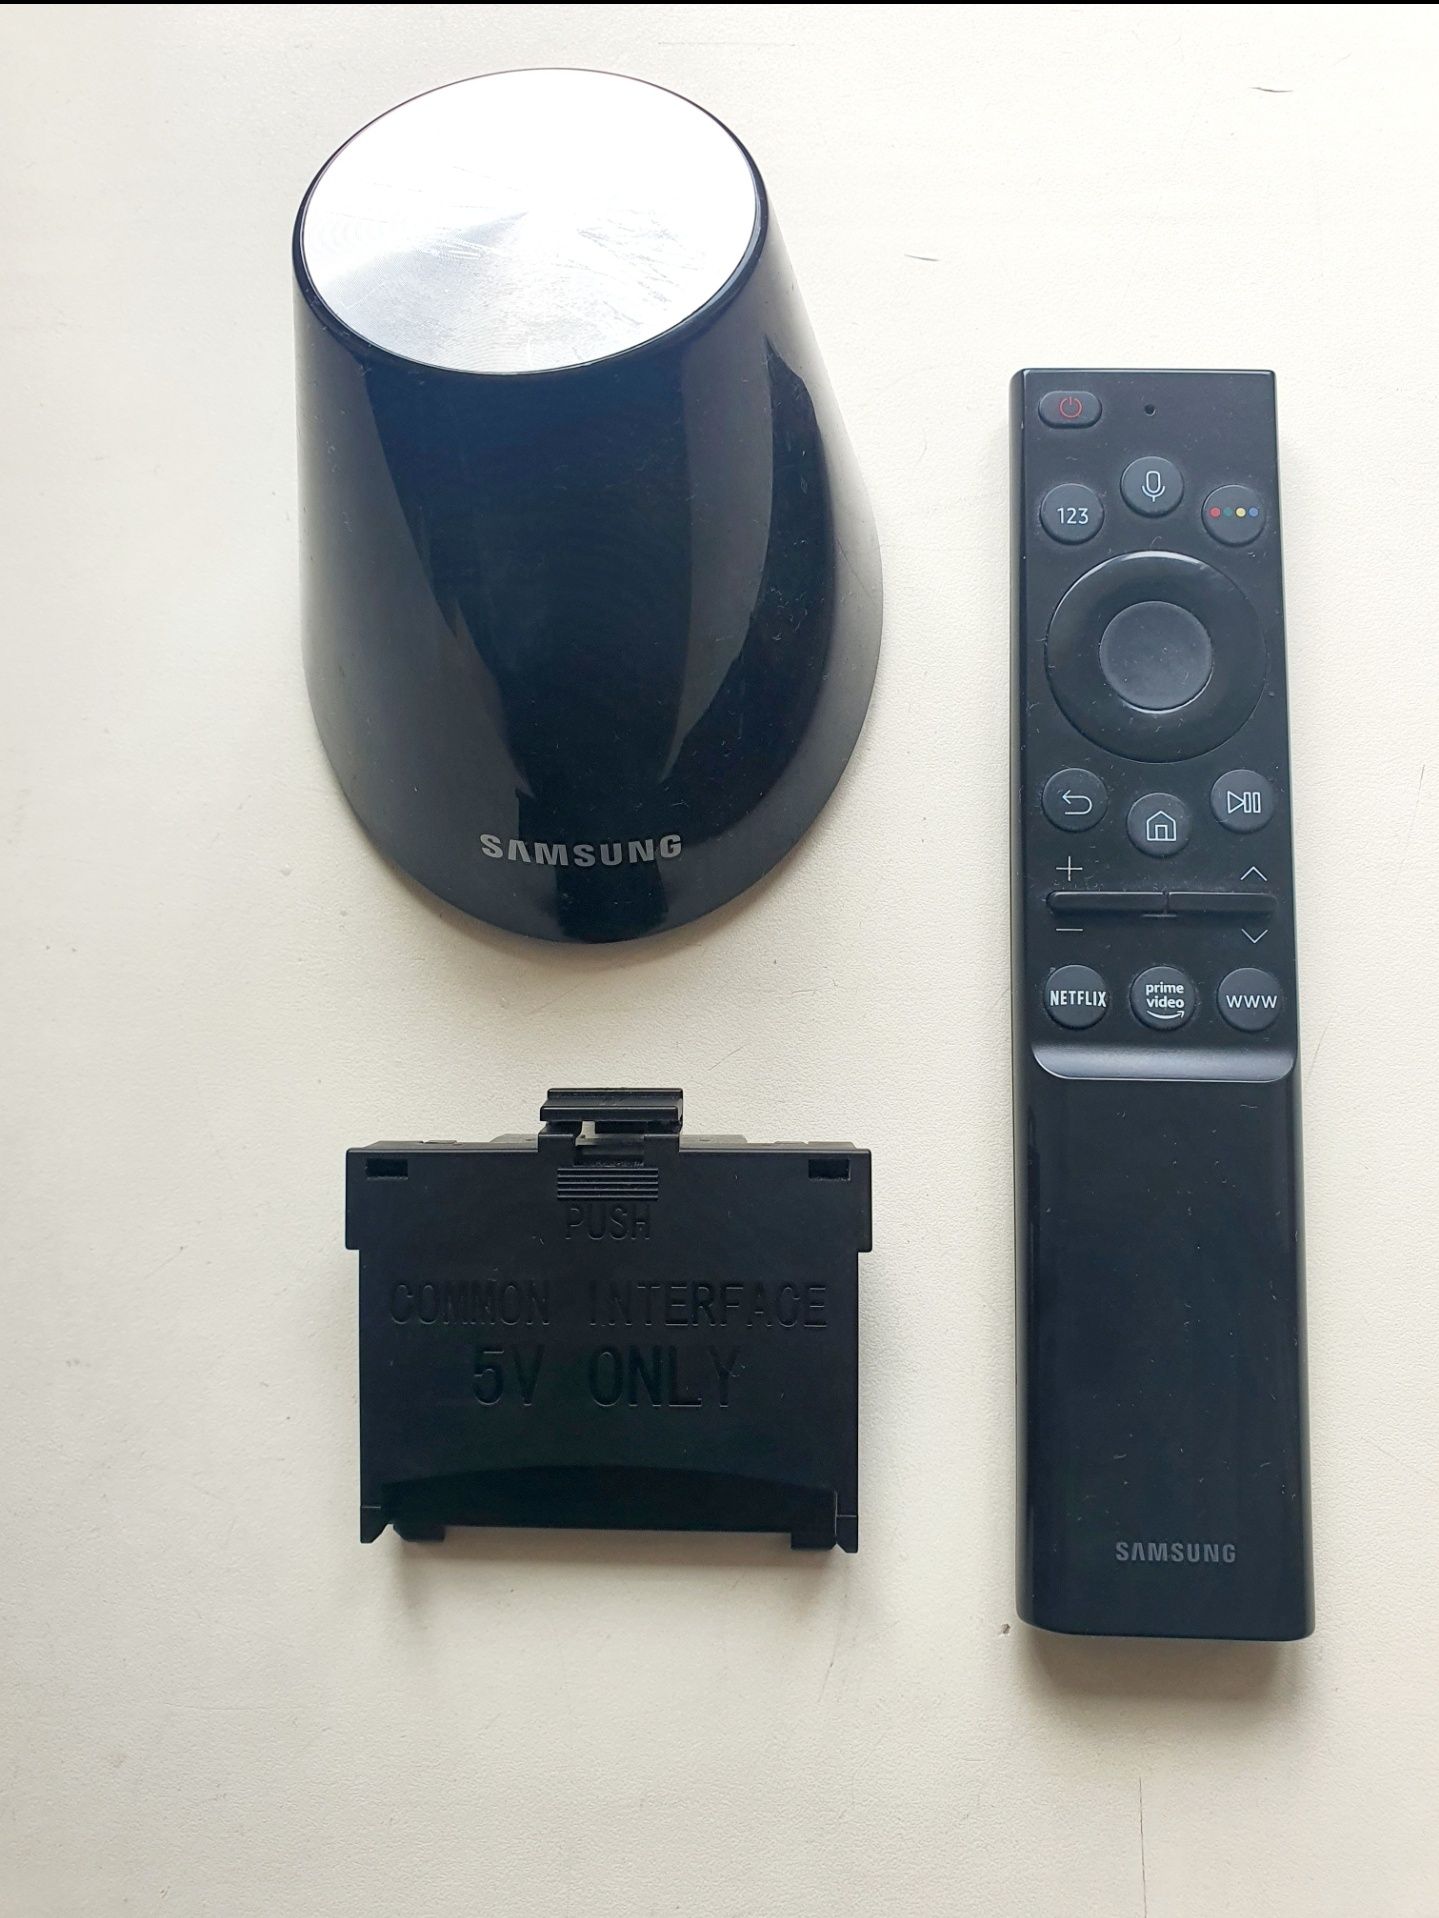 Оригинал Samsung Smart пульт с голосовым управлением